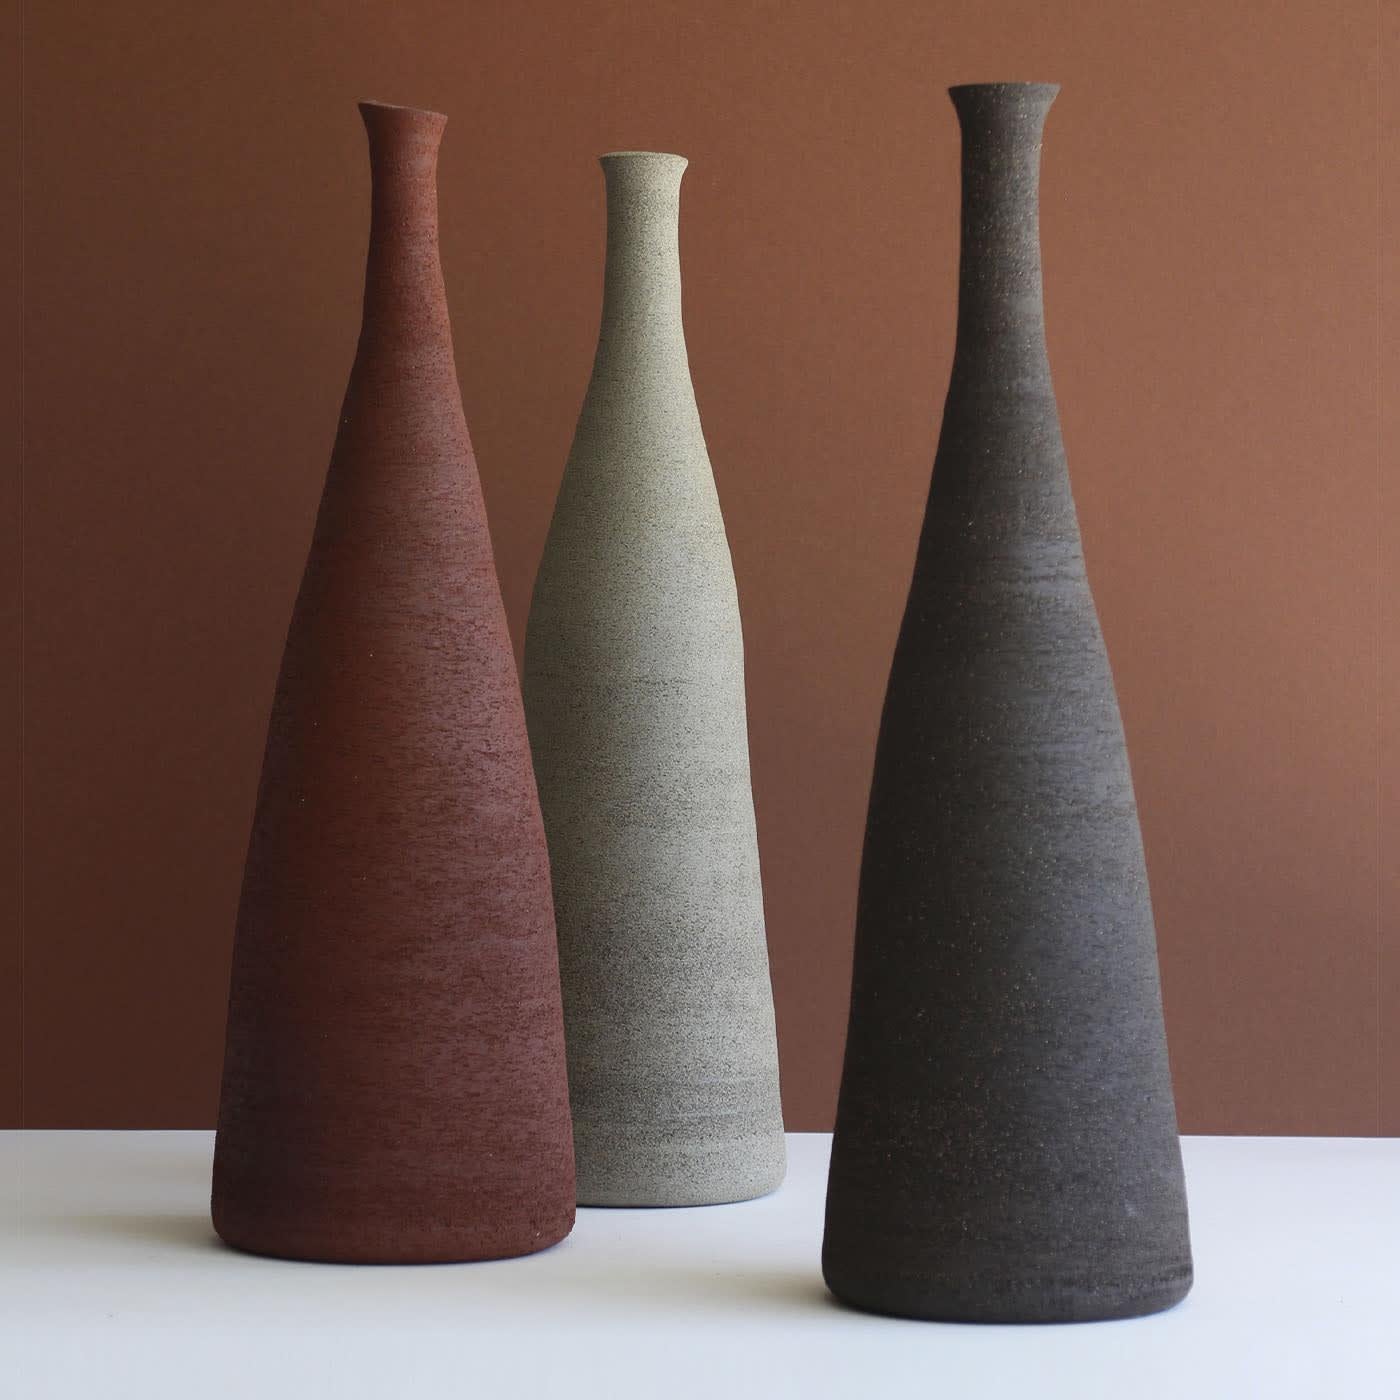 Eine raffinierte skulpturale Silhouette definiert diese einzigartige Vase aus Steinzeug, die eine exklusive und warme Ergänzung für zeitgenössische Einrichtungen darstellt. Das von Hand gefertigte Unikat hat einen tiefen rötlichen Farbton, der durch